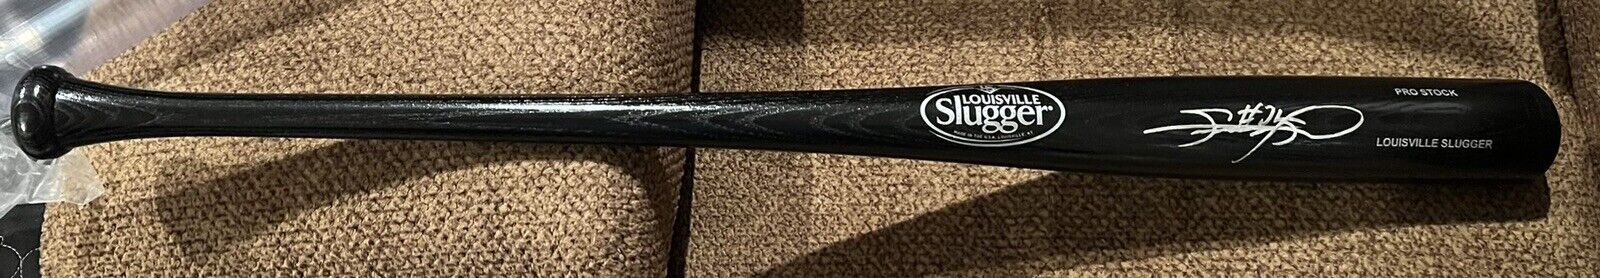 SAMMY SOSA Signed Autographed BLACK Baseball Bat Chicago Cubs JSA WITNESSED